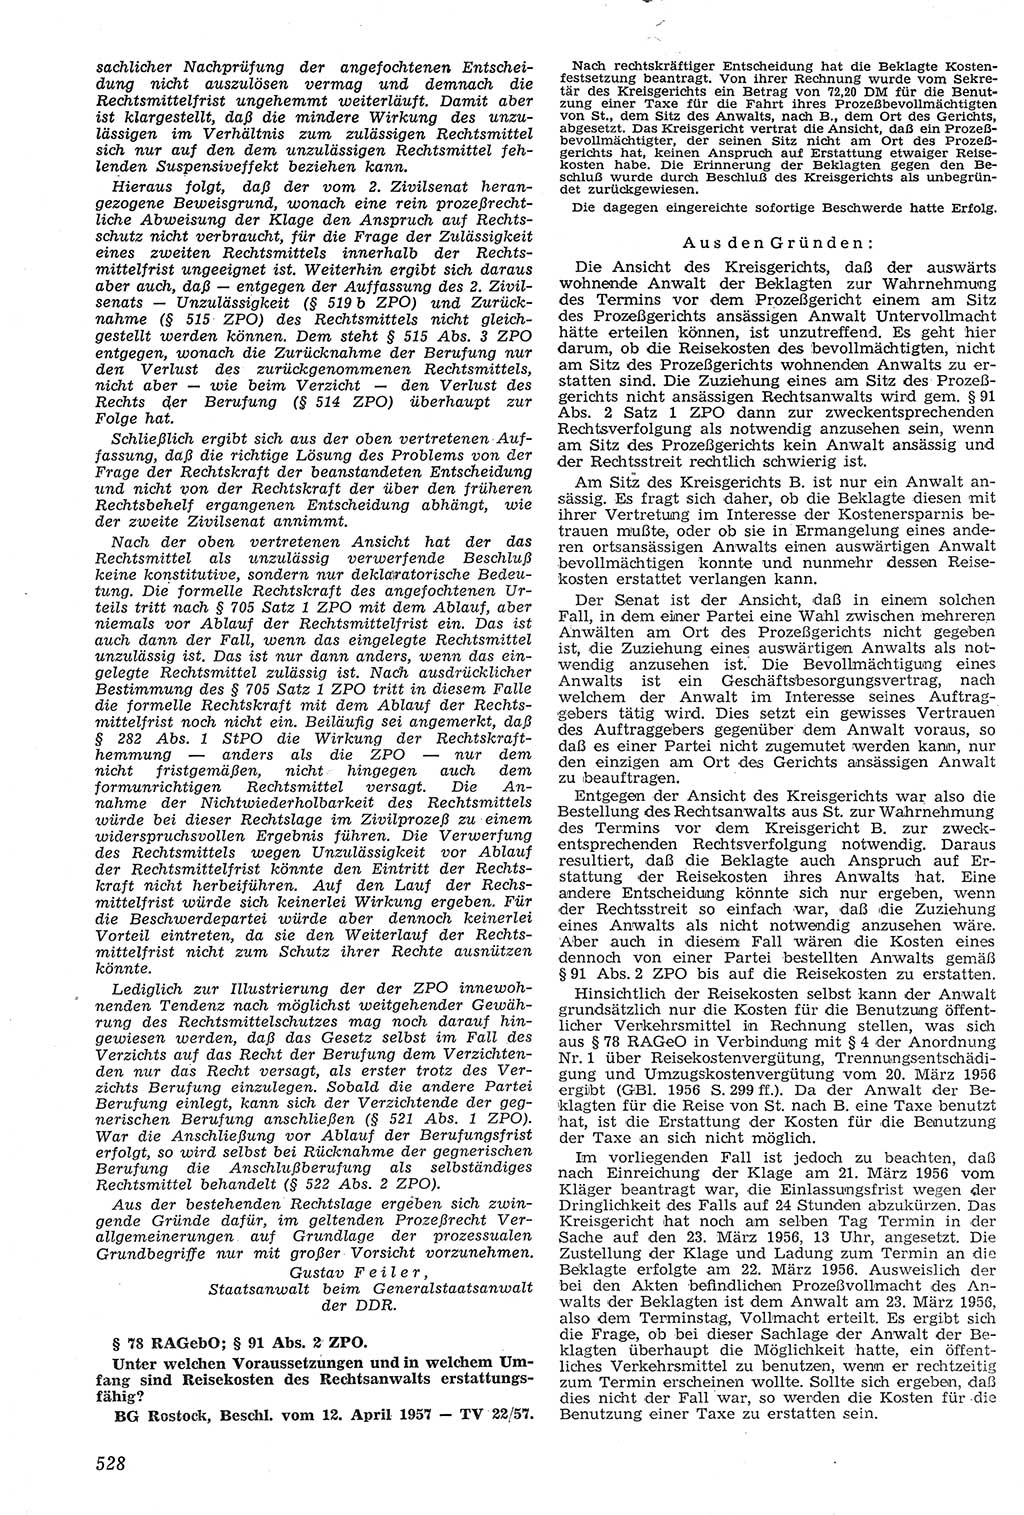 Neue Justiz (NJ), Zeitschrift für Recht und Rechtswissenschaft [Deutsche Demokratische Republik (DDR)], 11. Jahrgang 1957, Seite 528 (NJ DDR 1957, S. 528)